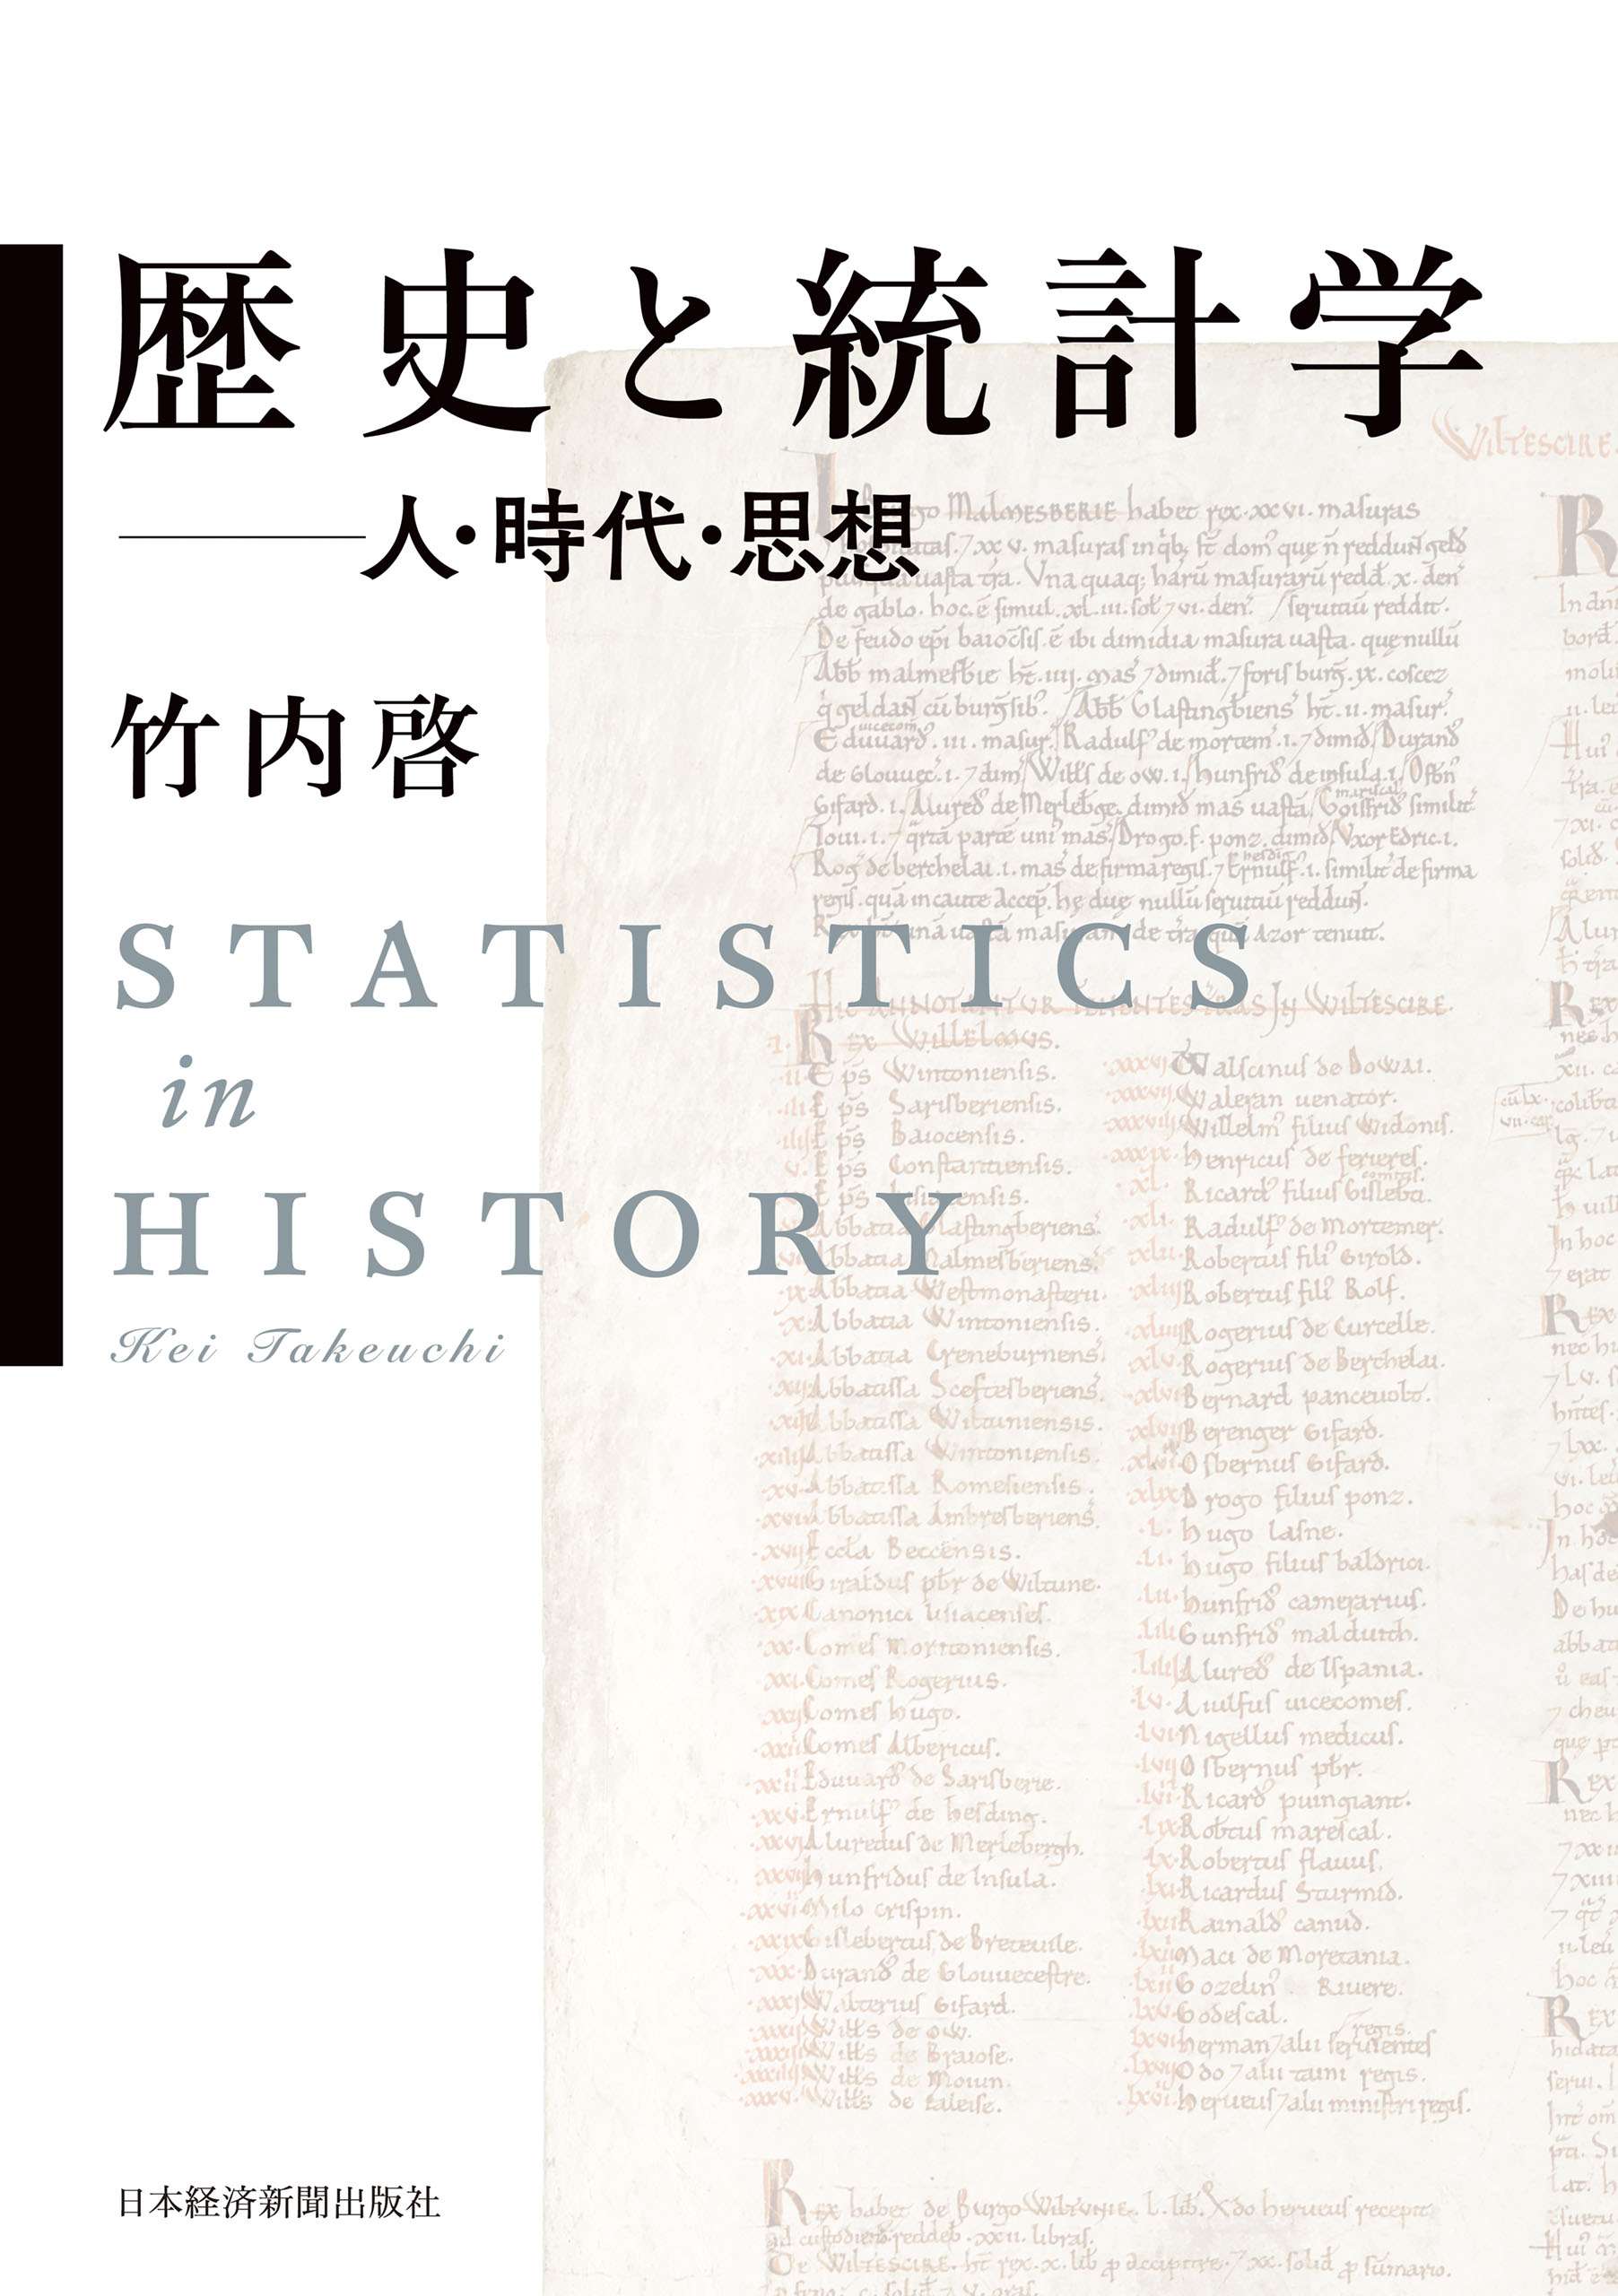 歴史と統計学 ――人・時代・思想